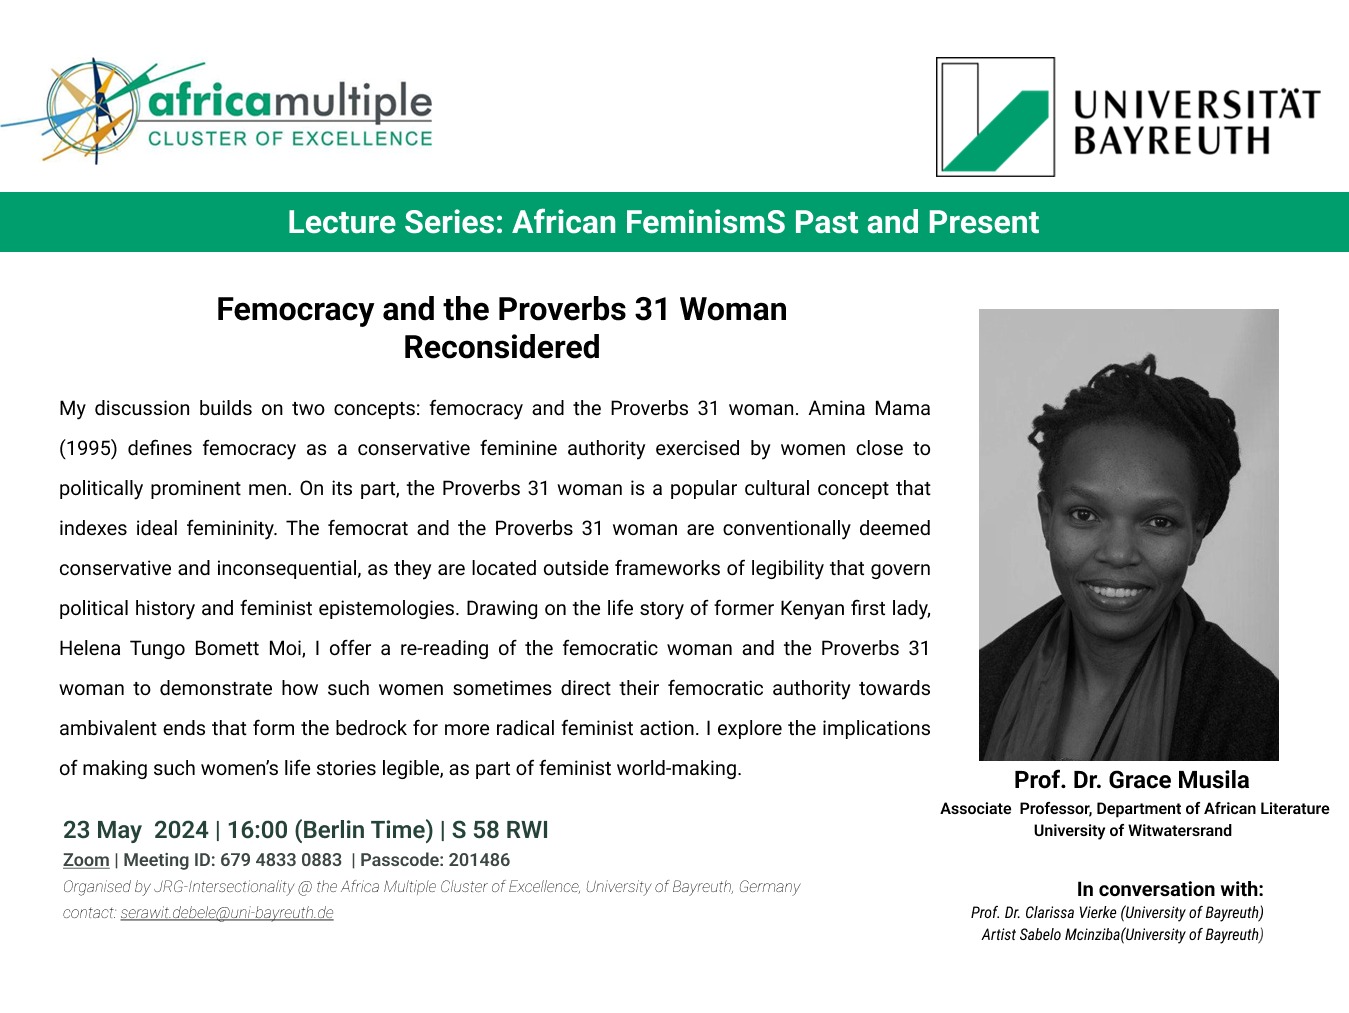 Grace Musila_Invitation Lecture Poster